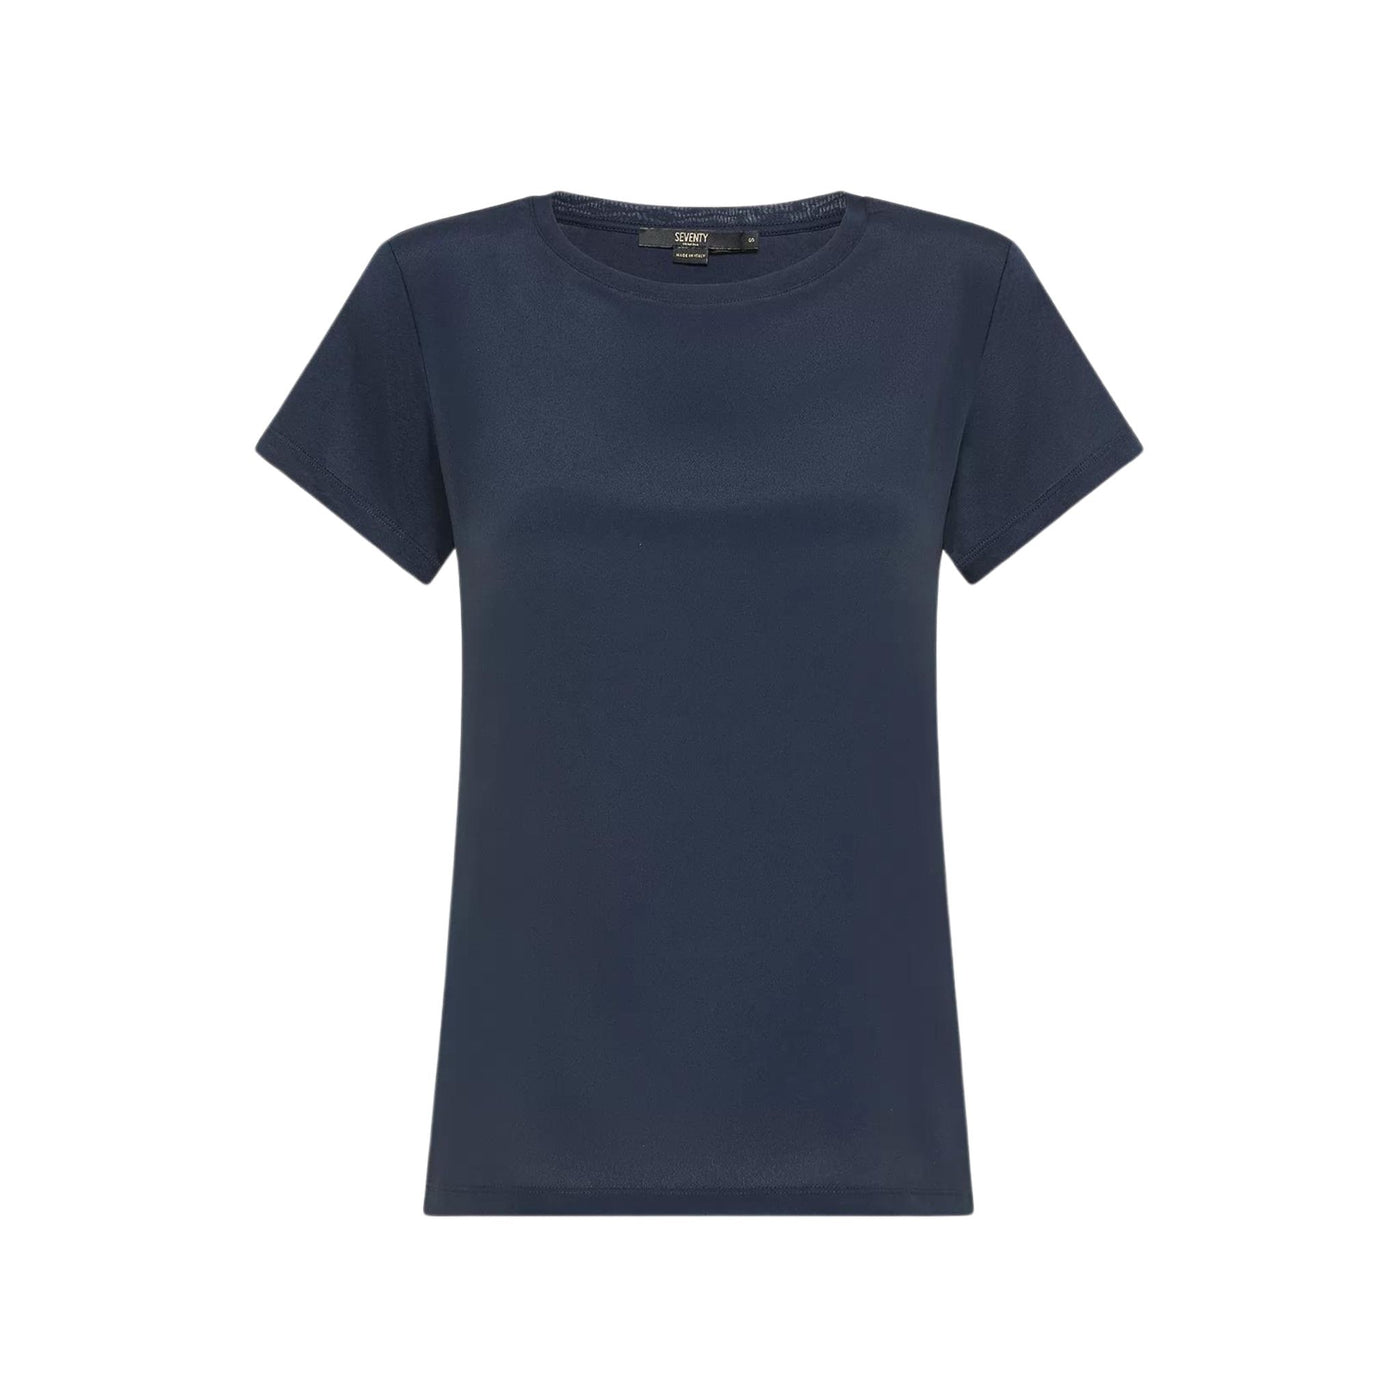 T-shirt Donna dalle linee classiche a tinta unita con maniche corte